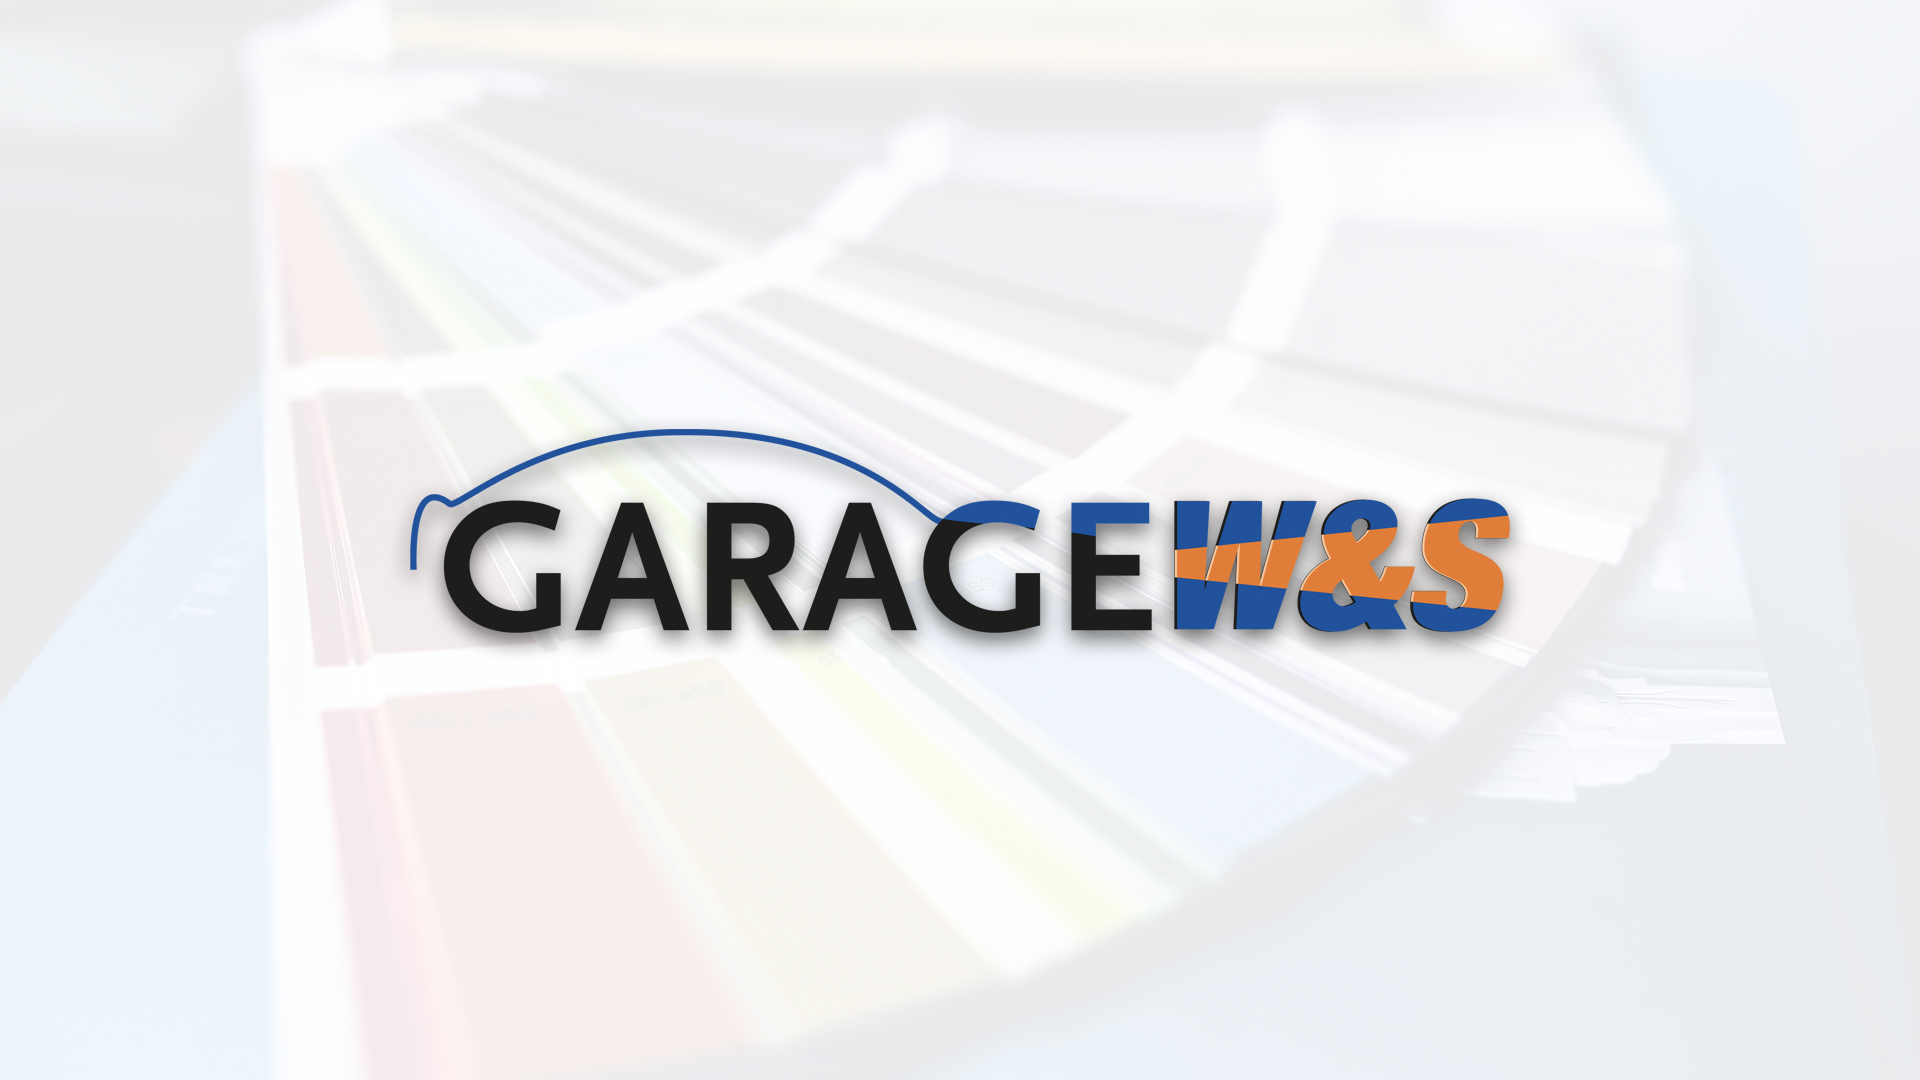 Garage W&S